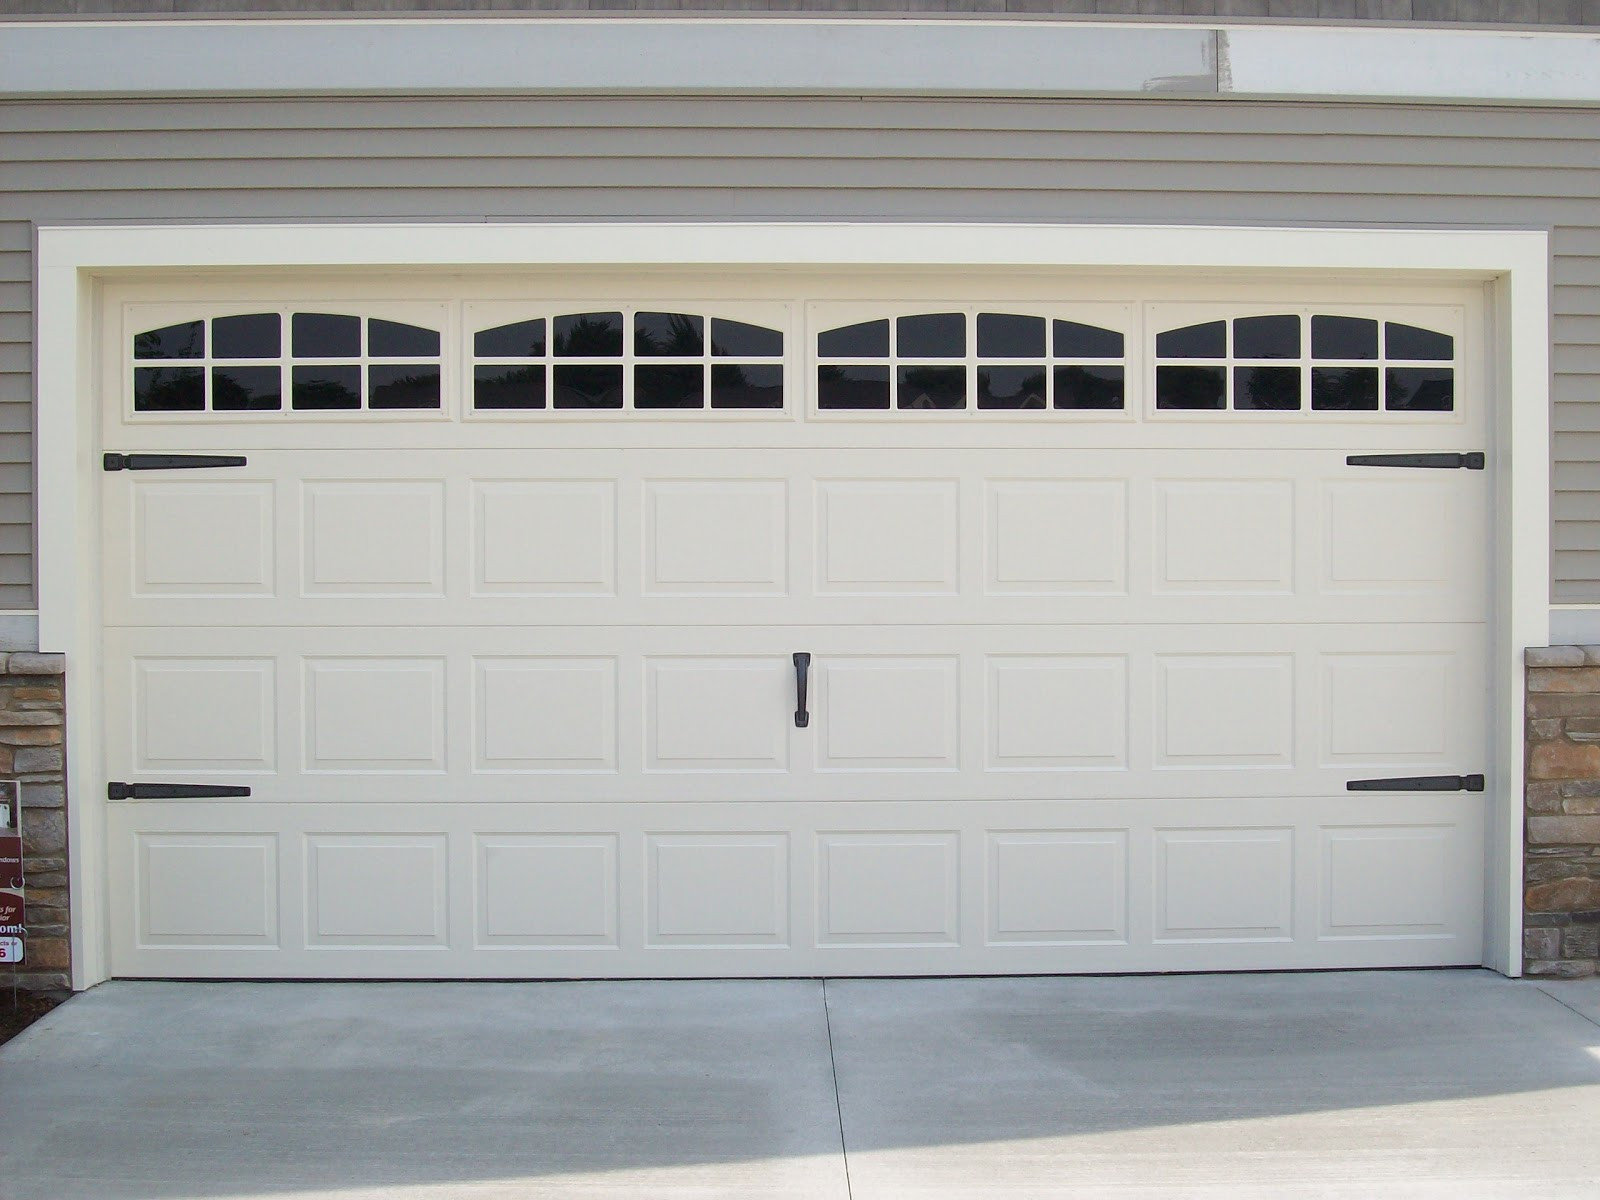 Garage Door Window Panels
 Coach House Accents Makeover Your Garage Door with Coach